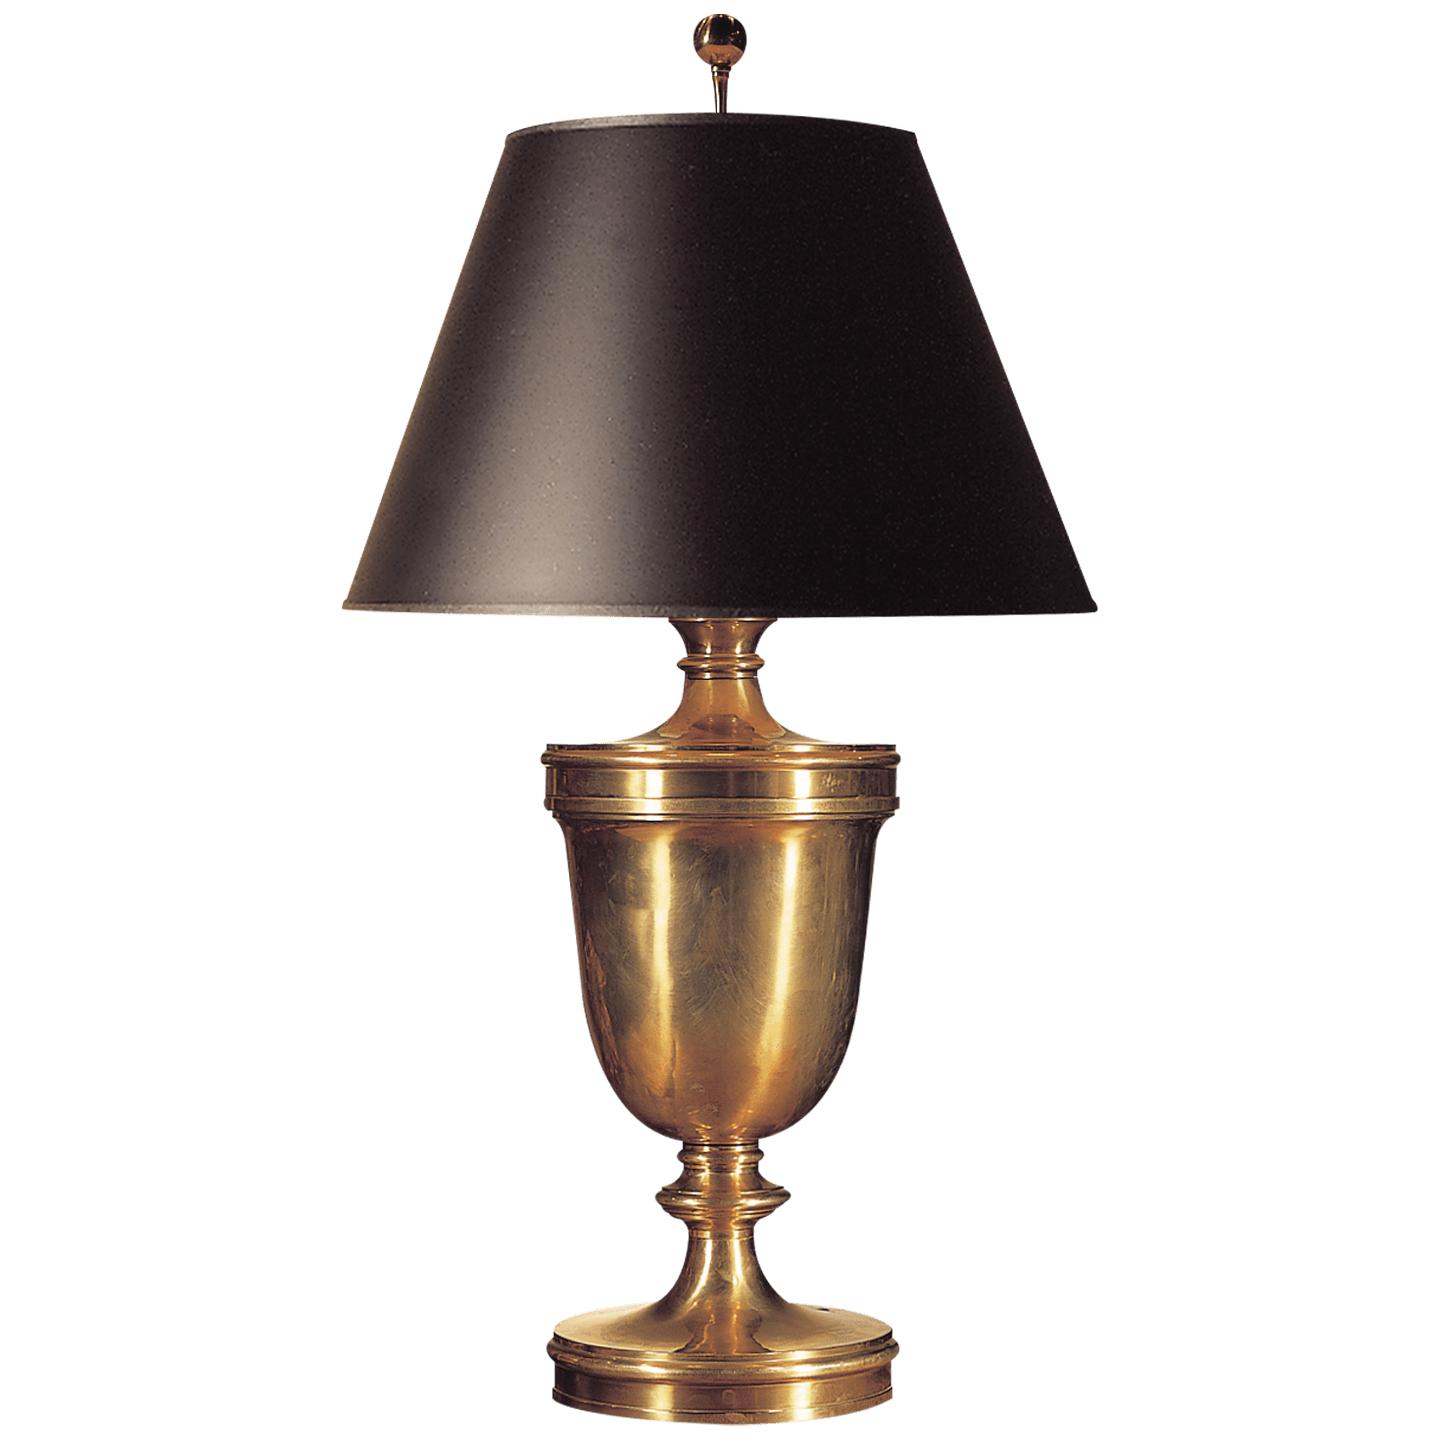 Купить Настольная лампа Classical Urn Form Large Table Lamp в интернет-магазине roooms.ru